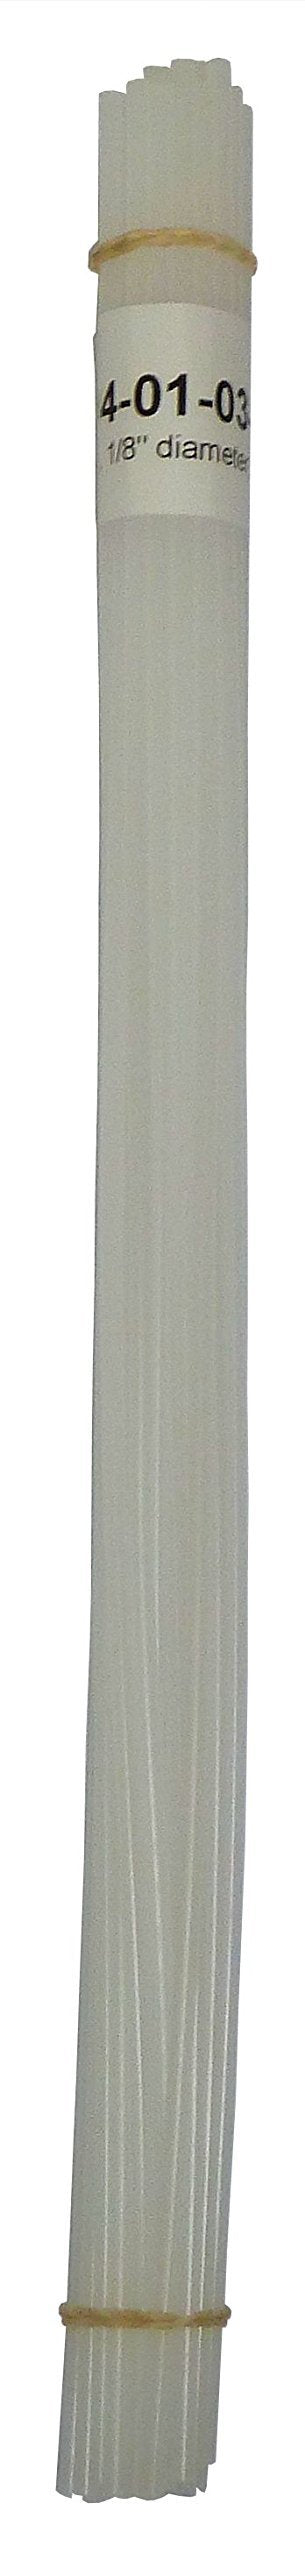 Polyethylene Rod Plastic Welding Rod, 1/8 in. diameter, 30 ft, Natural - NewNest Australia